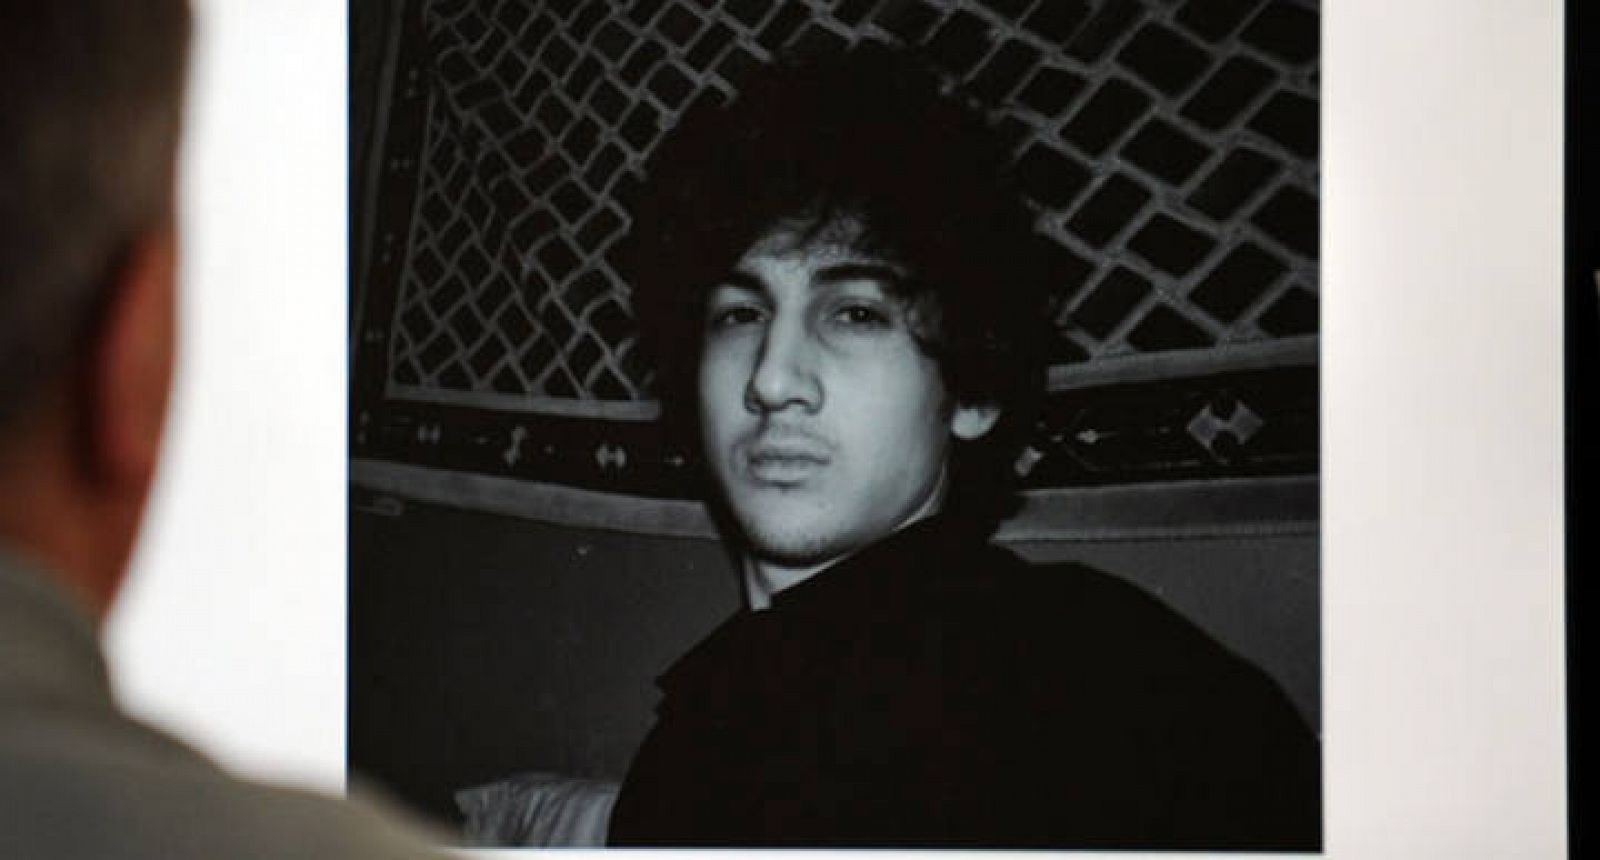 La Fiscalía federal de EE.UU. pedirá la pena de muerte para Tsarnaev por el atentado de Boston